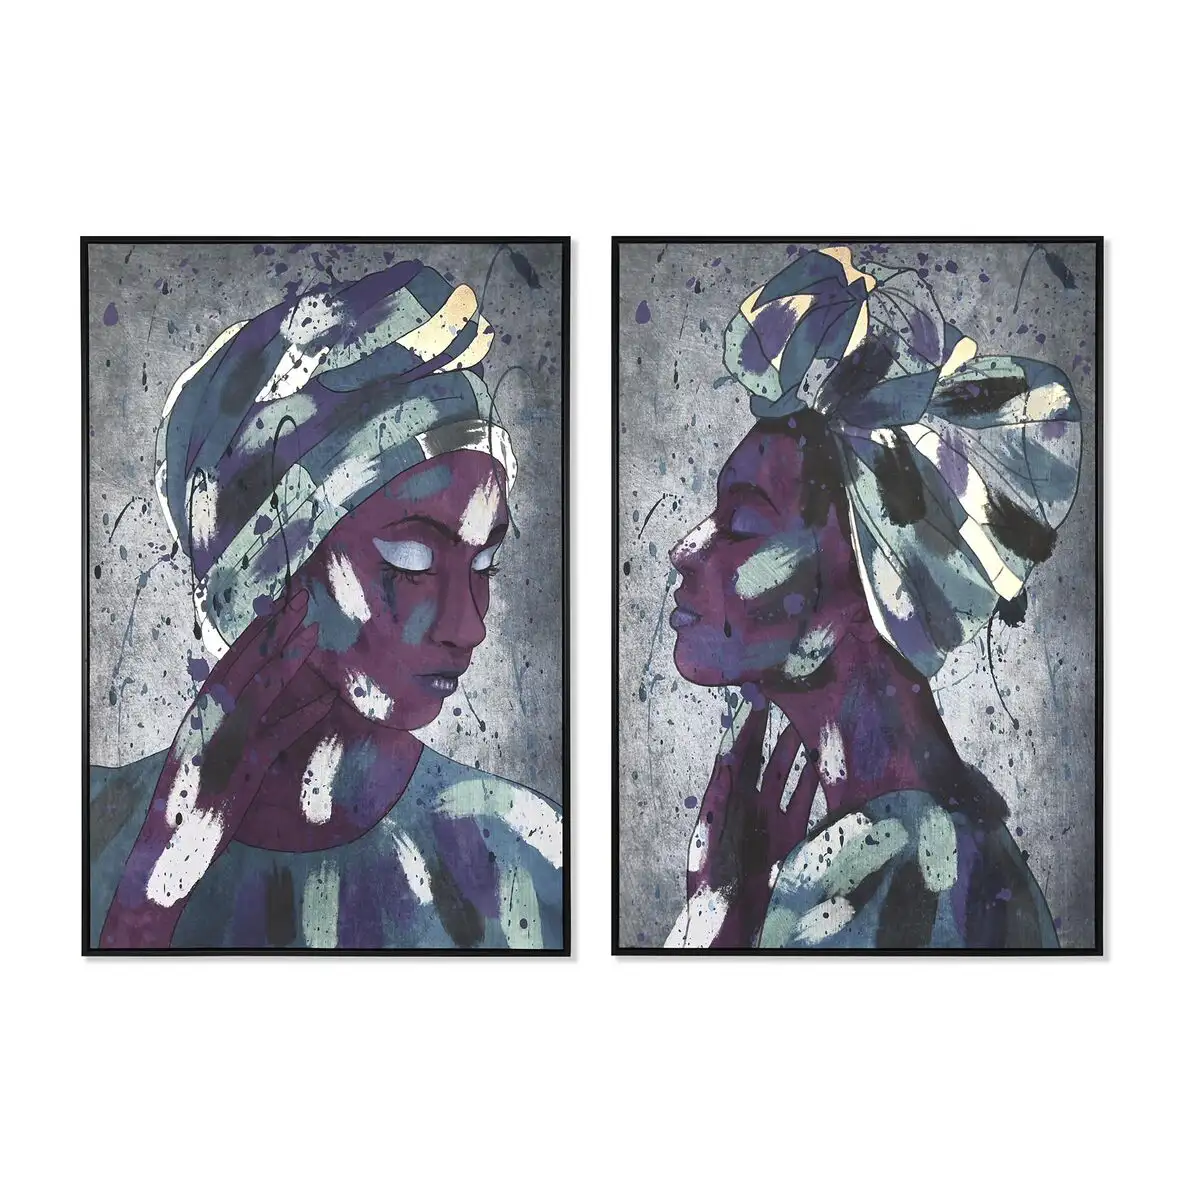 Peinture dkd home decor 83 x 4 5 x 122 5 cm 83 x 4 5 x 123 cm femme africaine coloniale 2 unite s_5019. DIAYTAR SENEGAL - L'Essence de la Tradition et de la Modernité réunies. Explorez notre plateforme en ligne pour trouver des produits authentiques du Sénégal, tout en découvrant les dernières tendances du monde moderne.